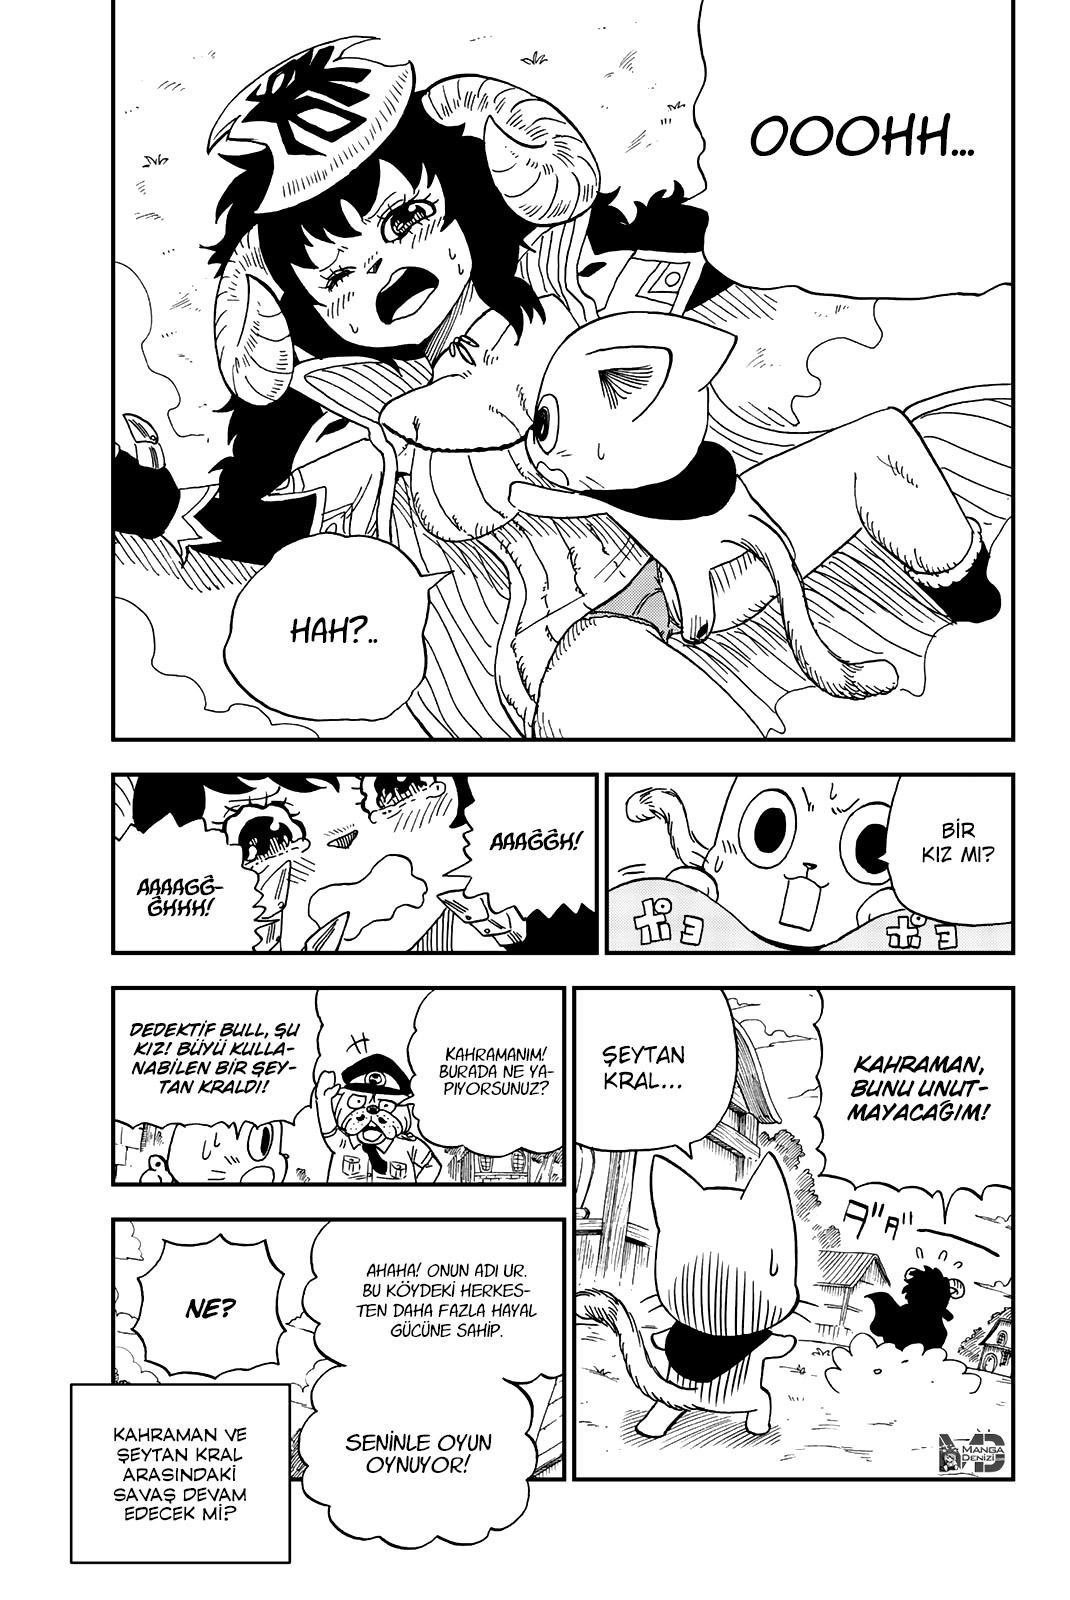 Fairy Tail: Happy's Great Adventure mangasının 10.5 bölümünün 4. sayfasını okuyorsunuz.